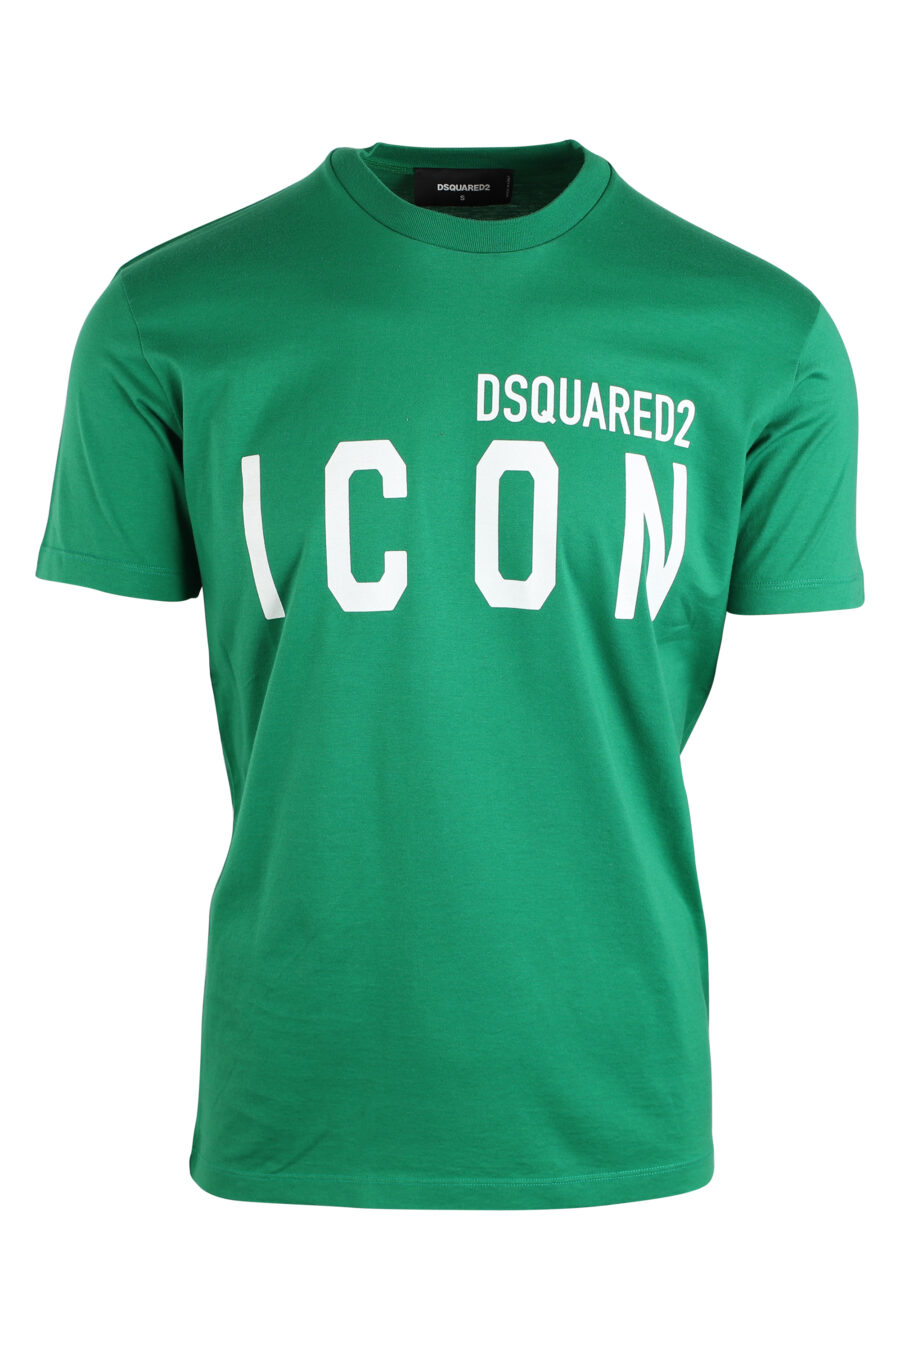 Camiseta verde con doble logo "icon" - IMG 0613